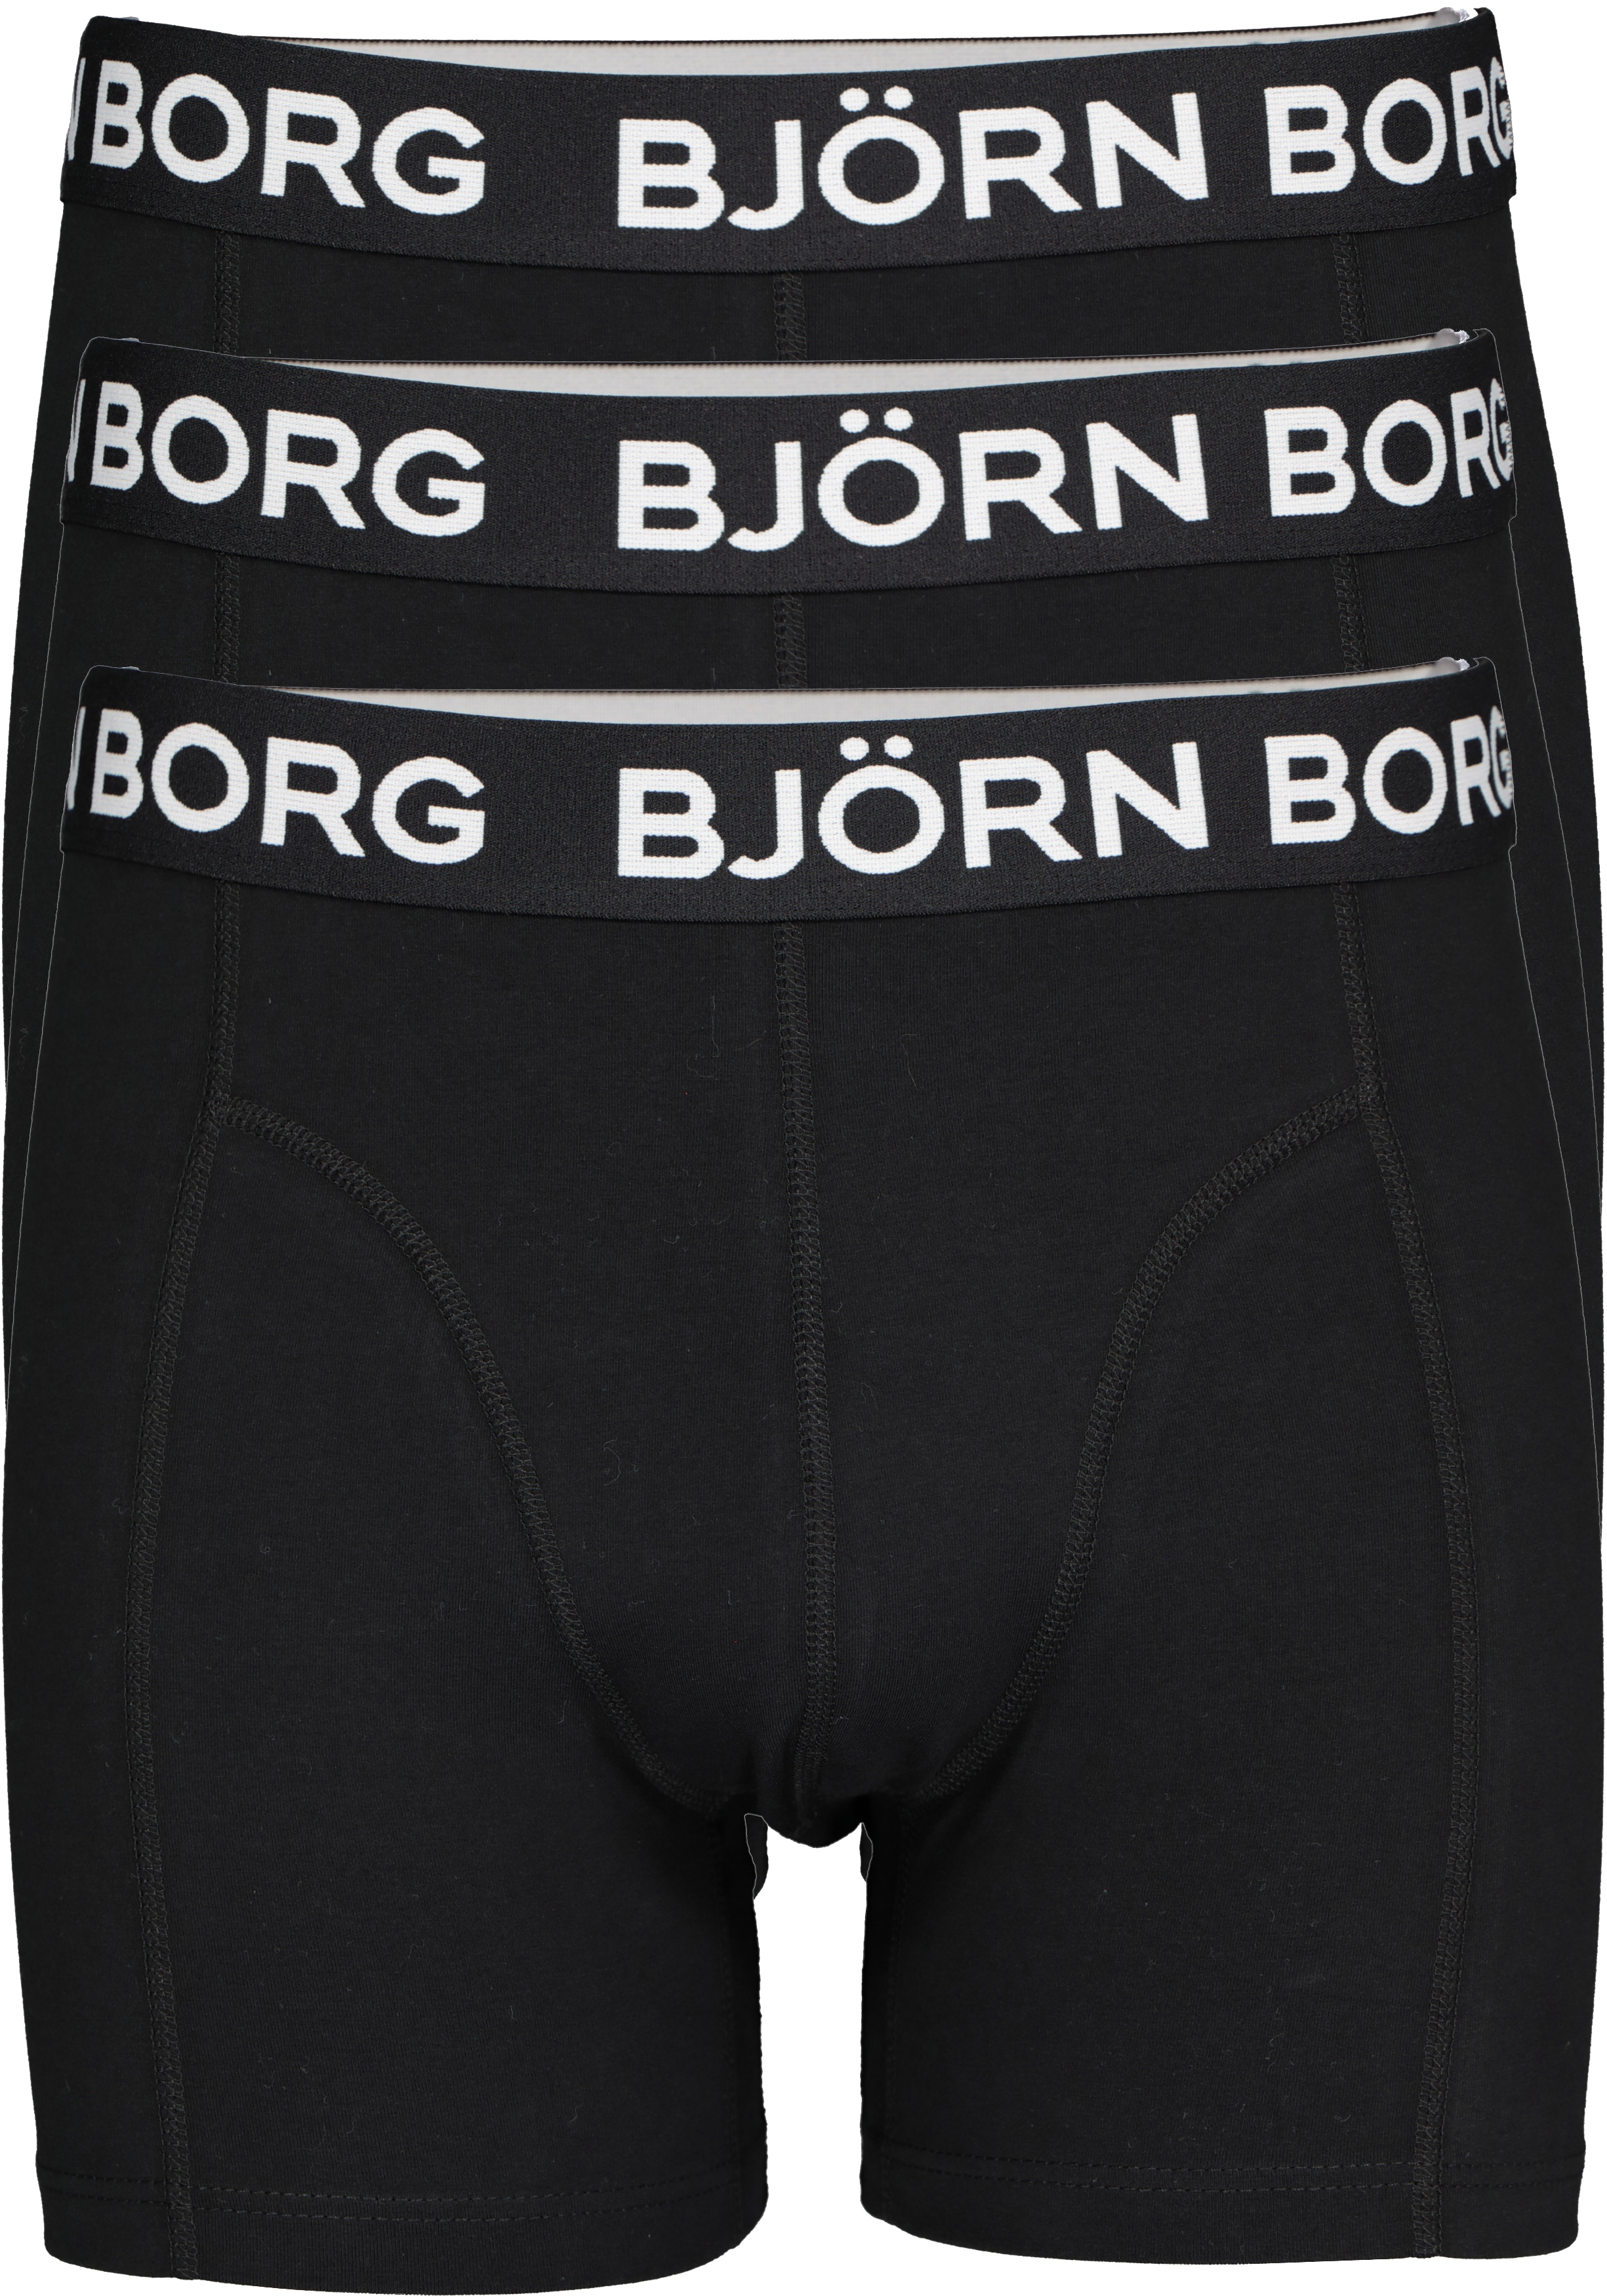 Rijd weg Voel me slecht Zegenen Bjorn Borg boxershorts Core (3-pack), heren boxers normale lengte, zwart -  SALE tot 70% korting